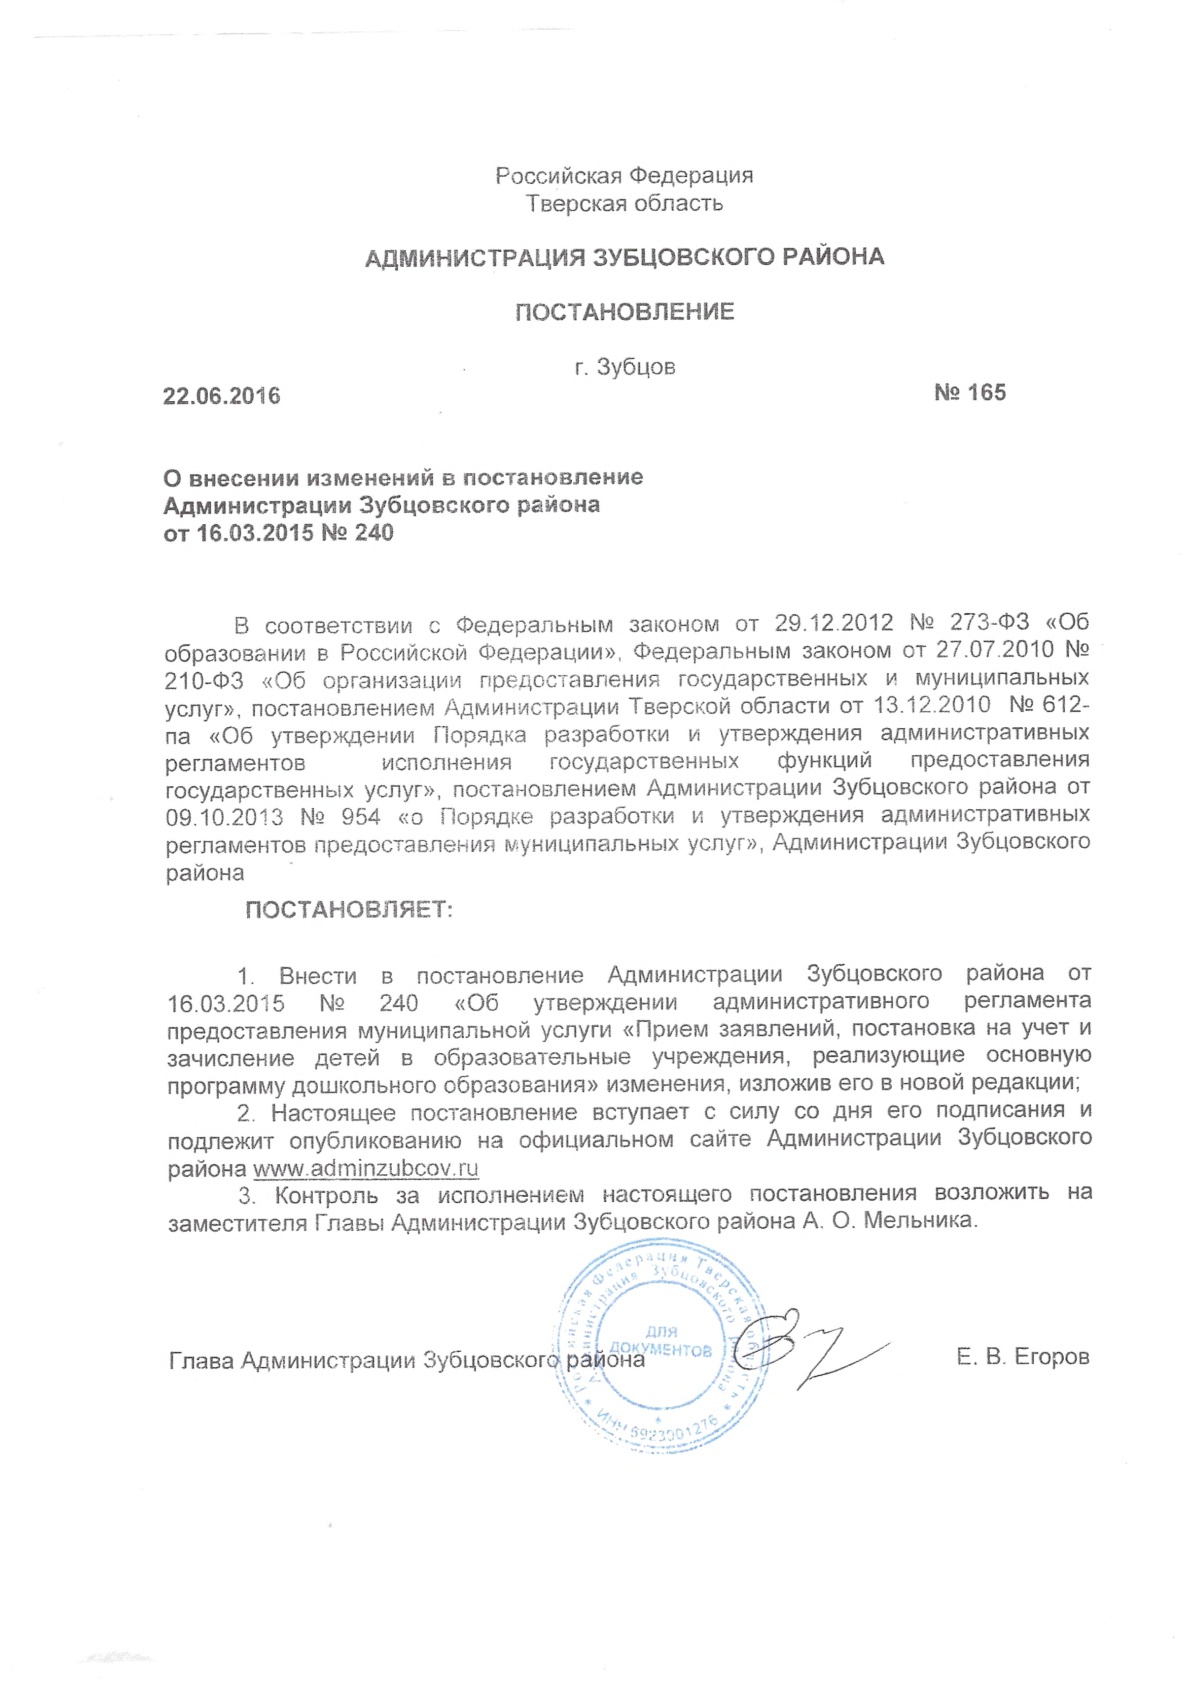 Постановление 165 от 22.06.2016 о внесении изменений в регламент